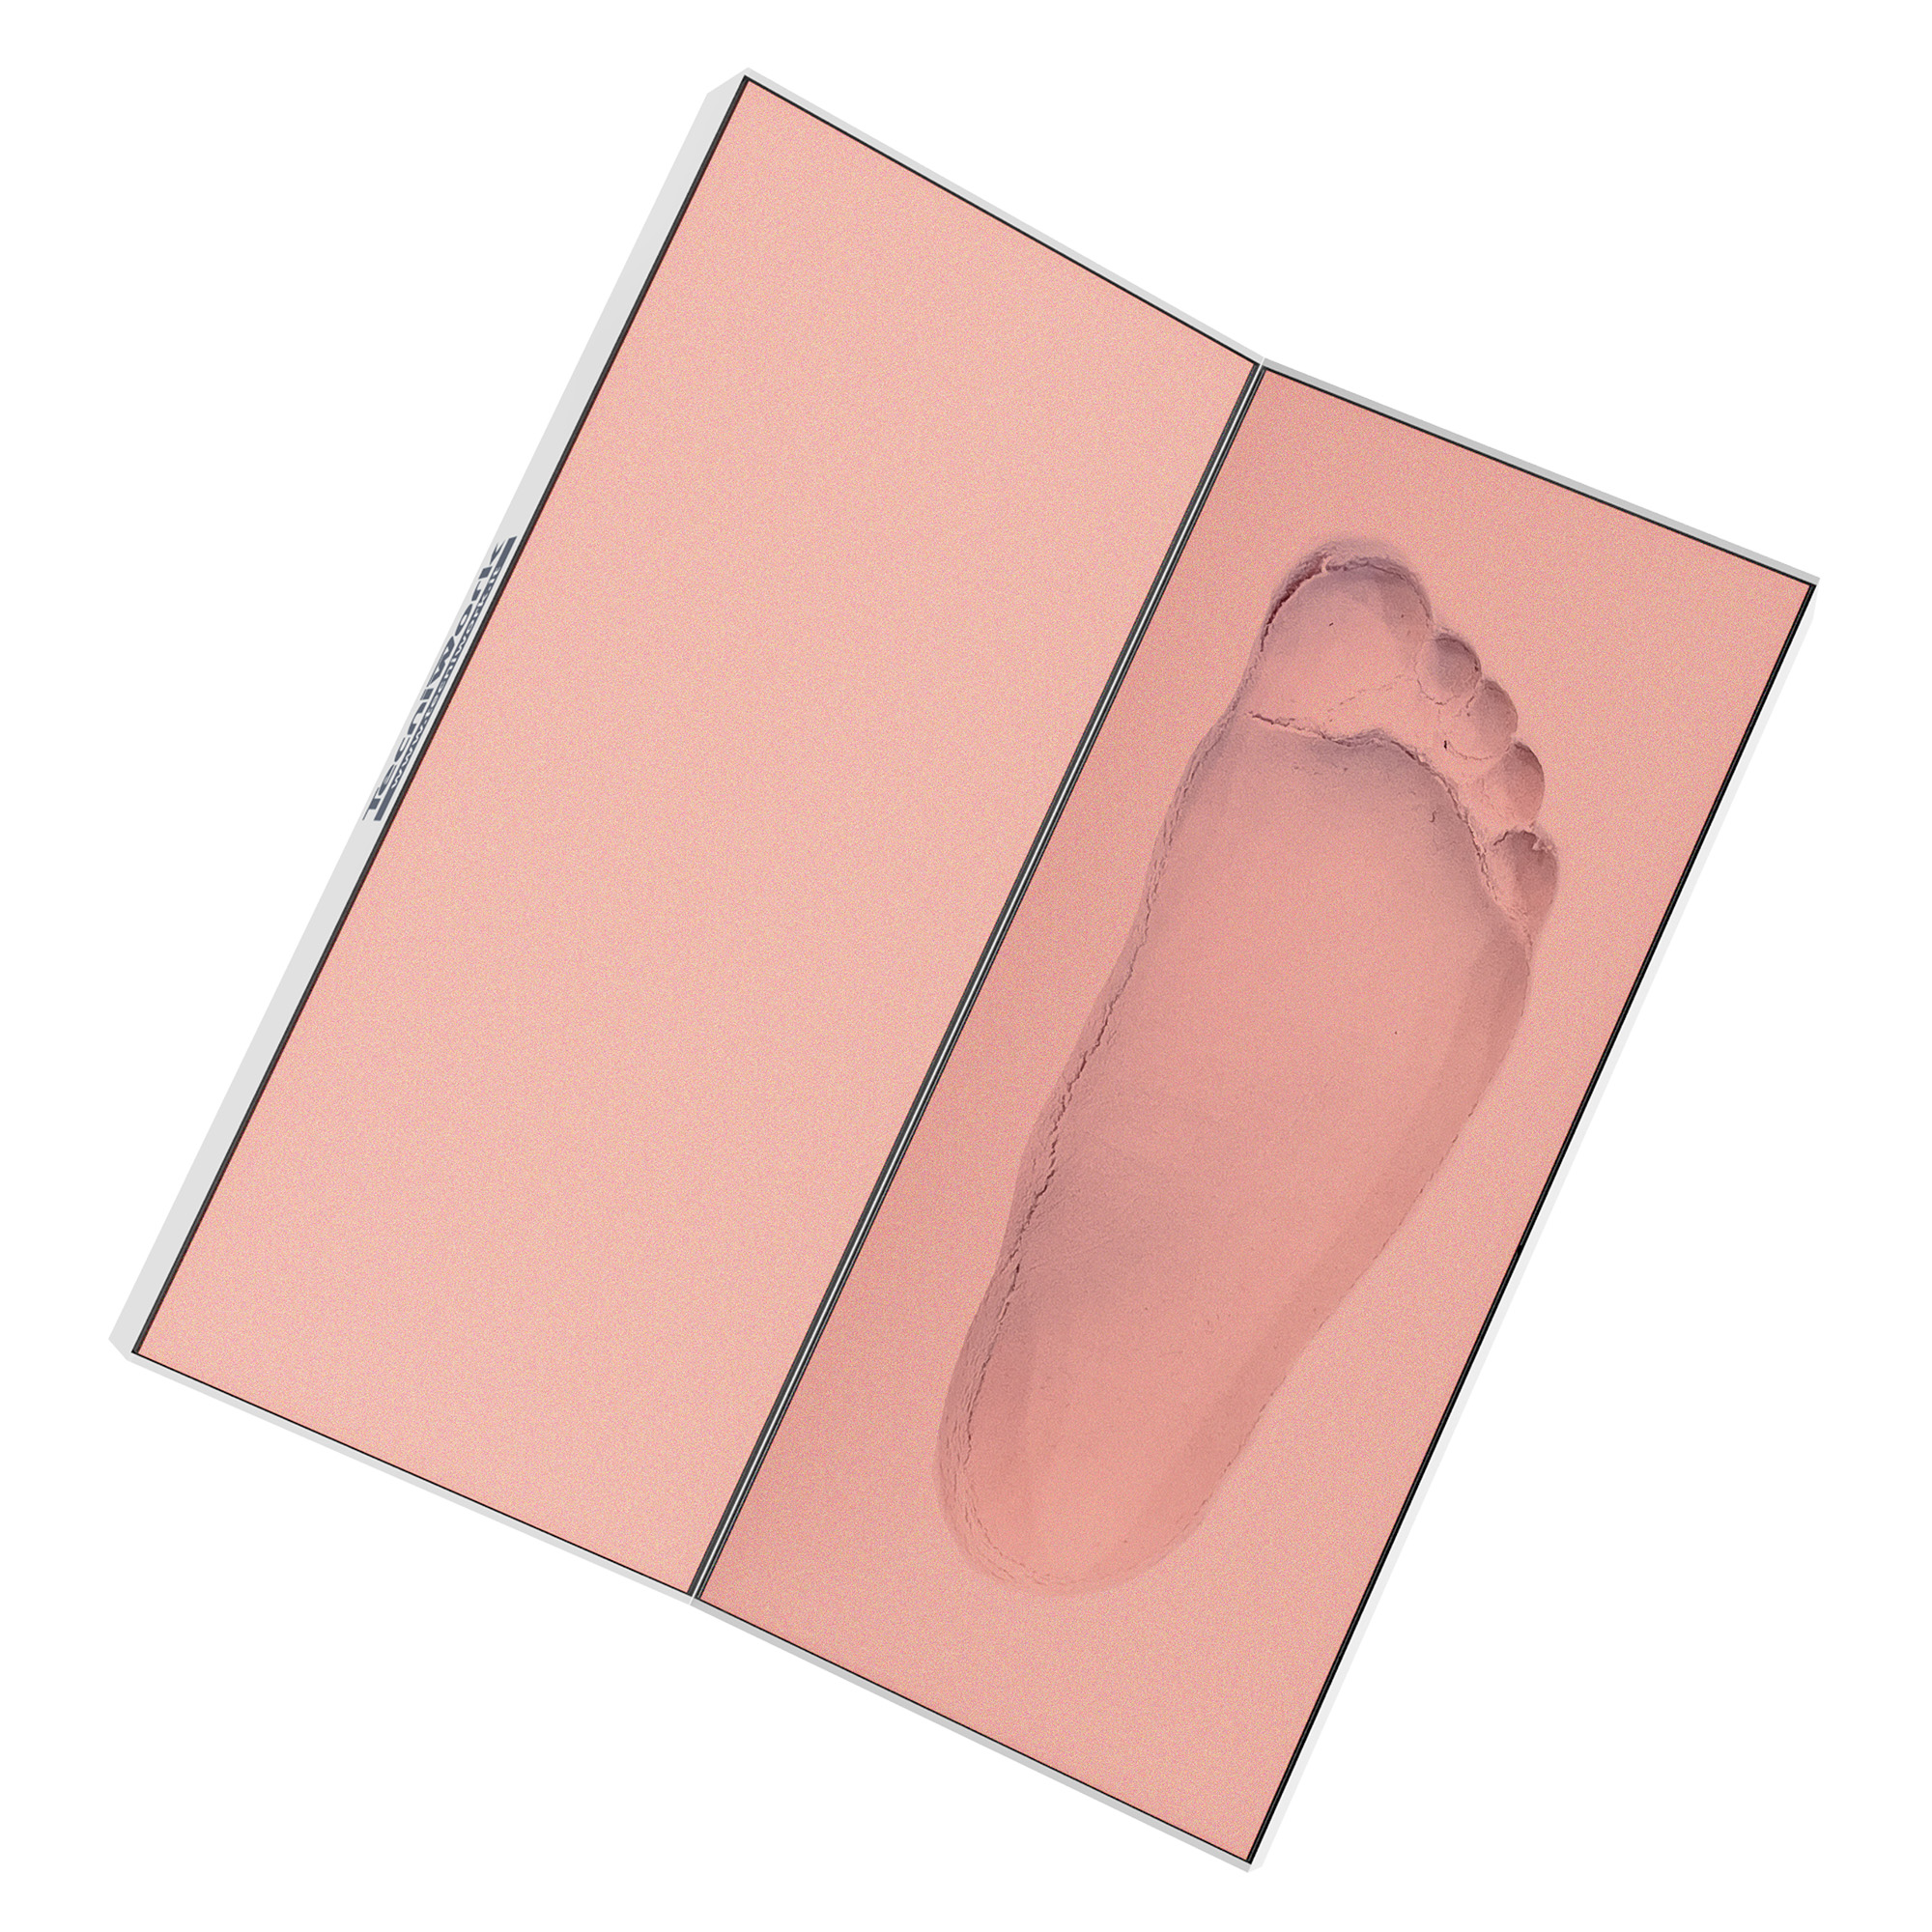 Tecniwork Phenolschaum für Fußabdrücke mit Gussformen oder Gipsabdrücken 1 Stk.